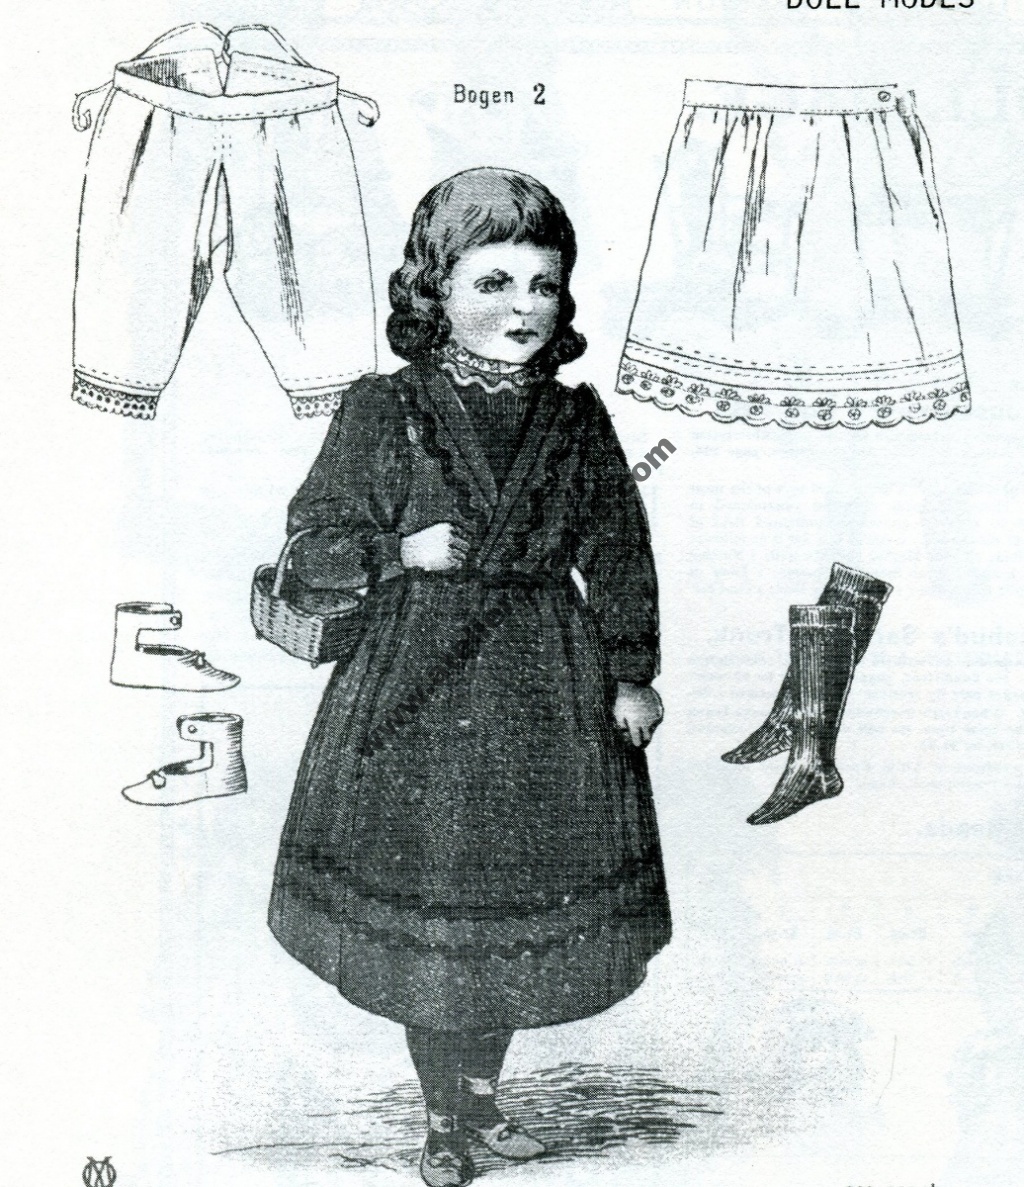 La mode pour poupées de 1900-1920 : robe, jupon, bloomer, chaussettes et chaussures